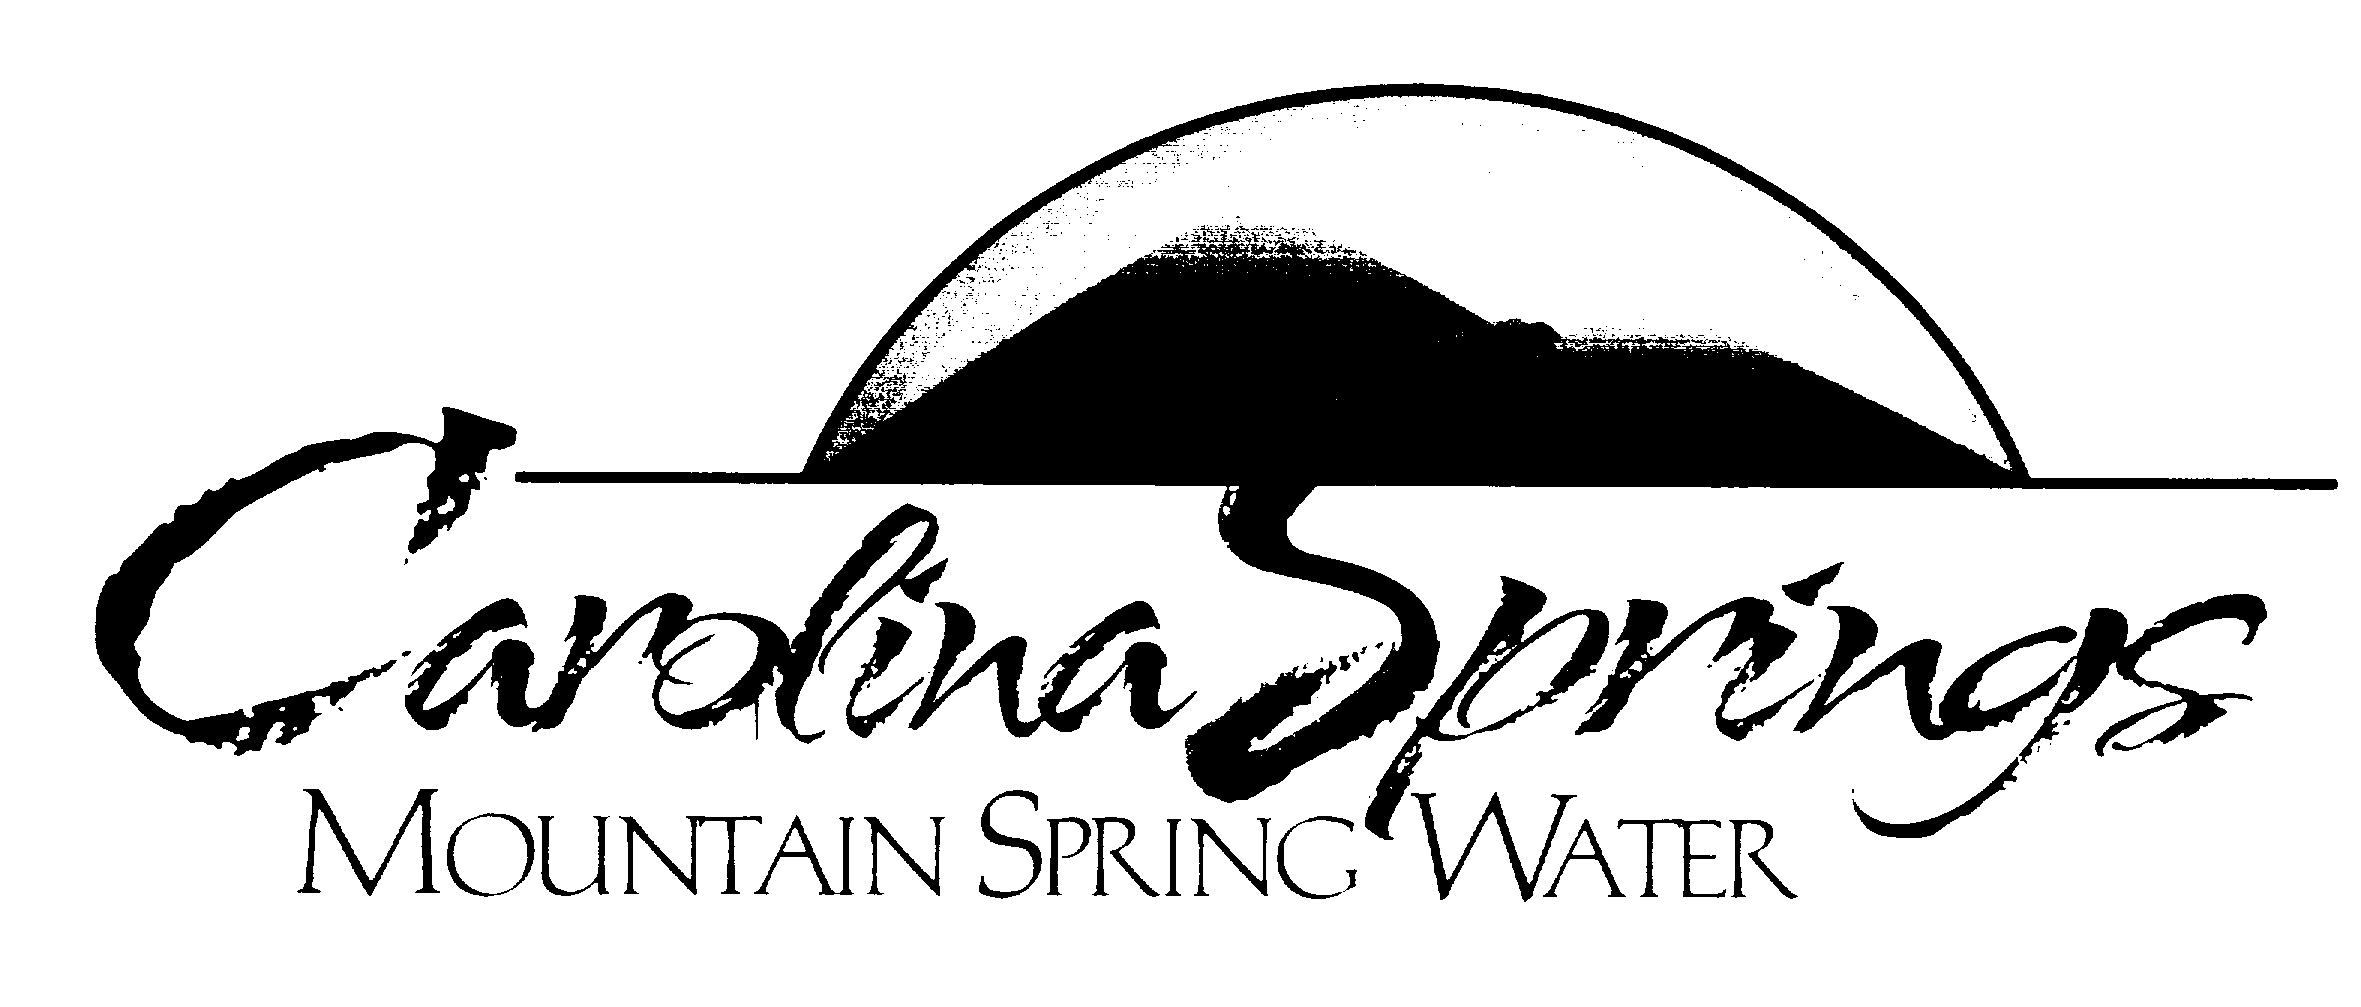  CAROLINA SPRINGS MOUNTAIN SPRING WATER